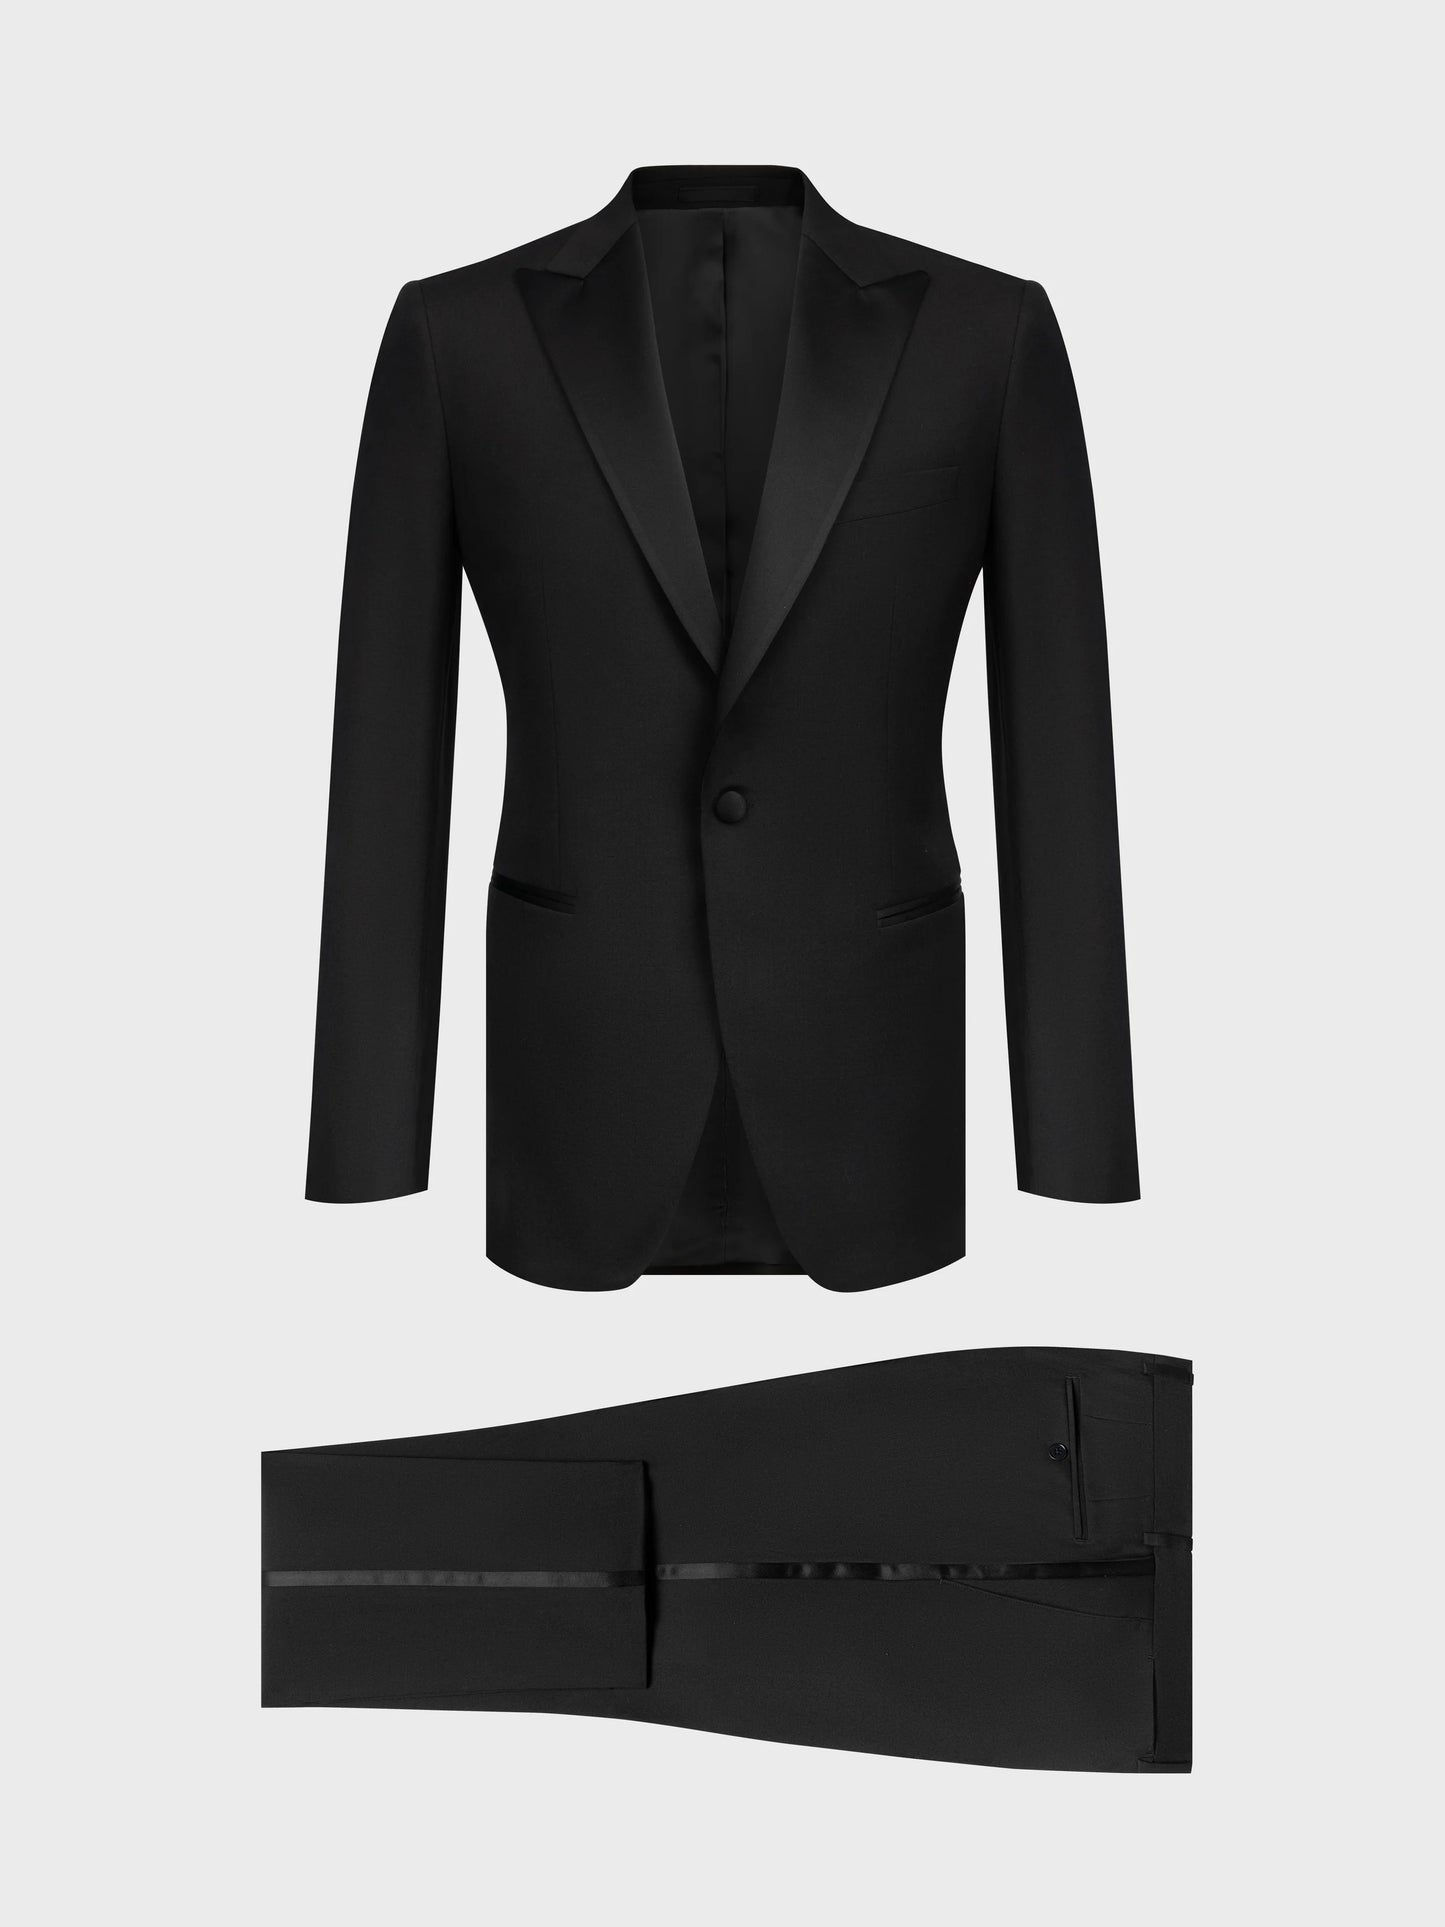 SFC160 Coimbra Suit